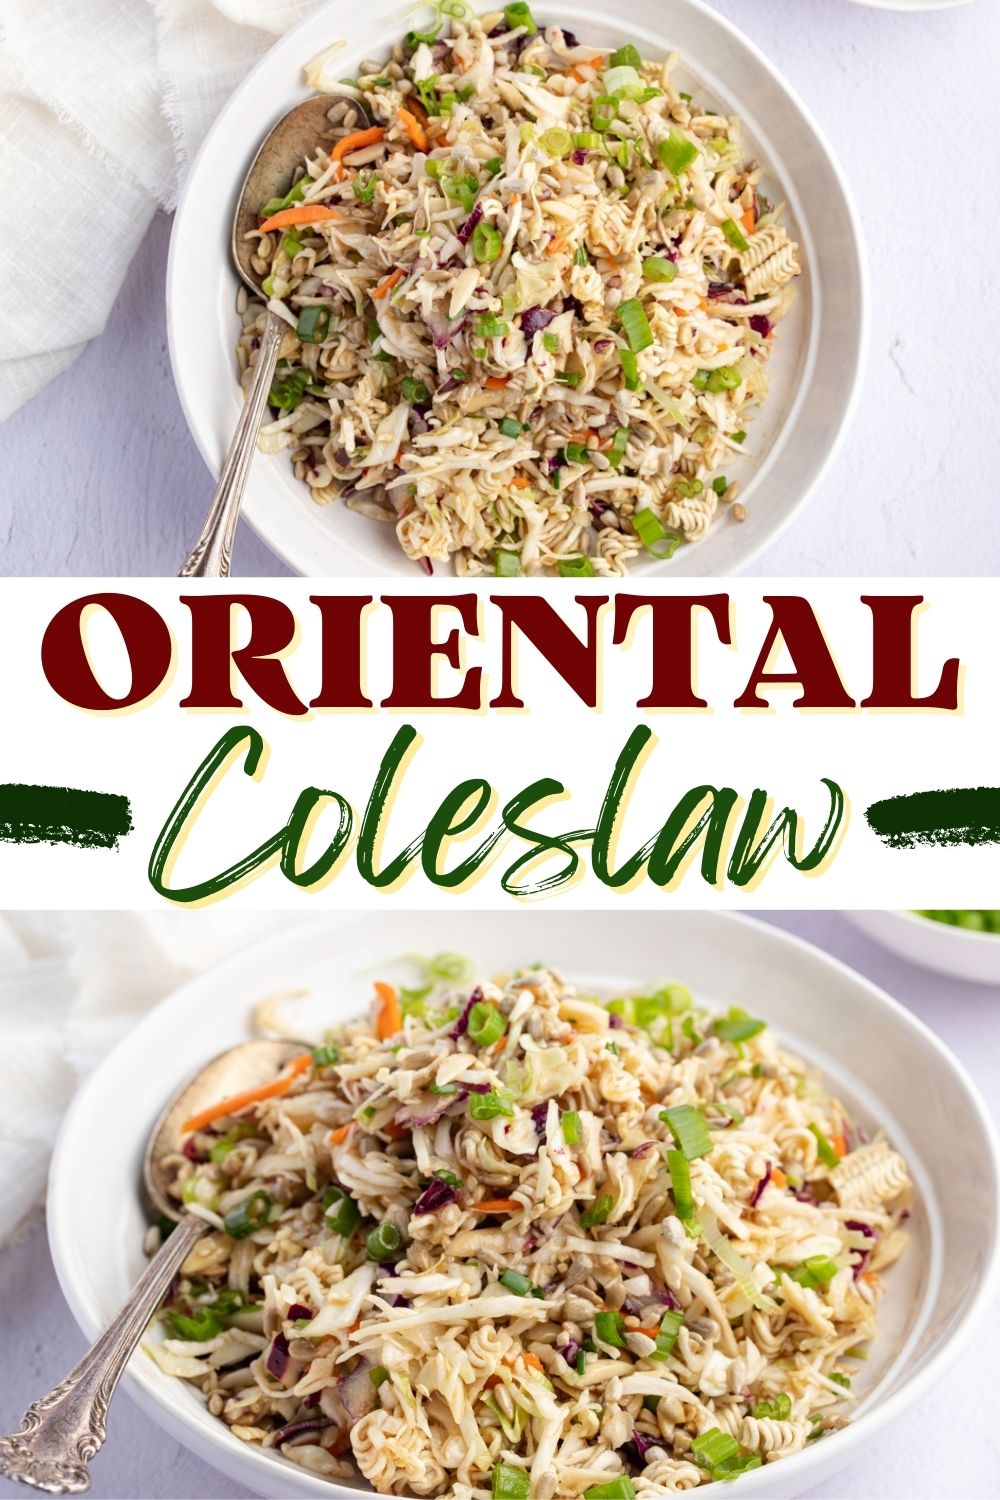 Oriental Coleslaw